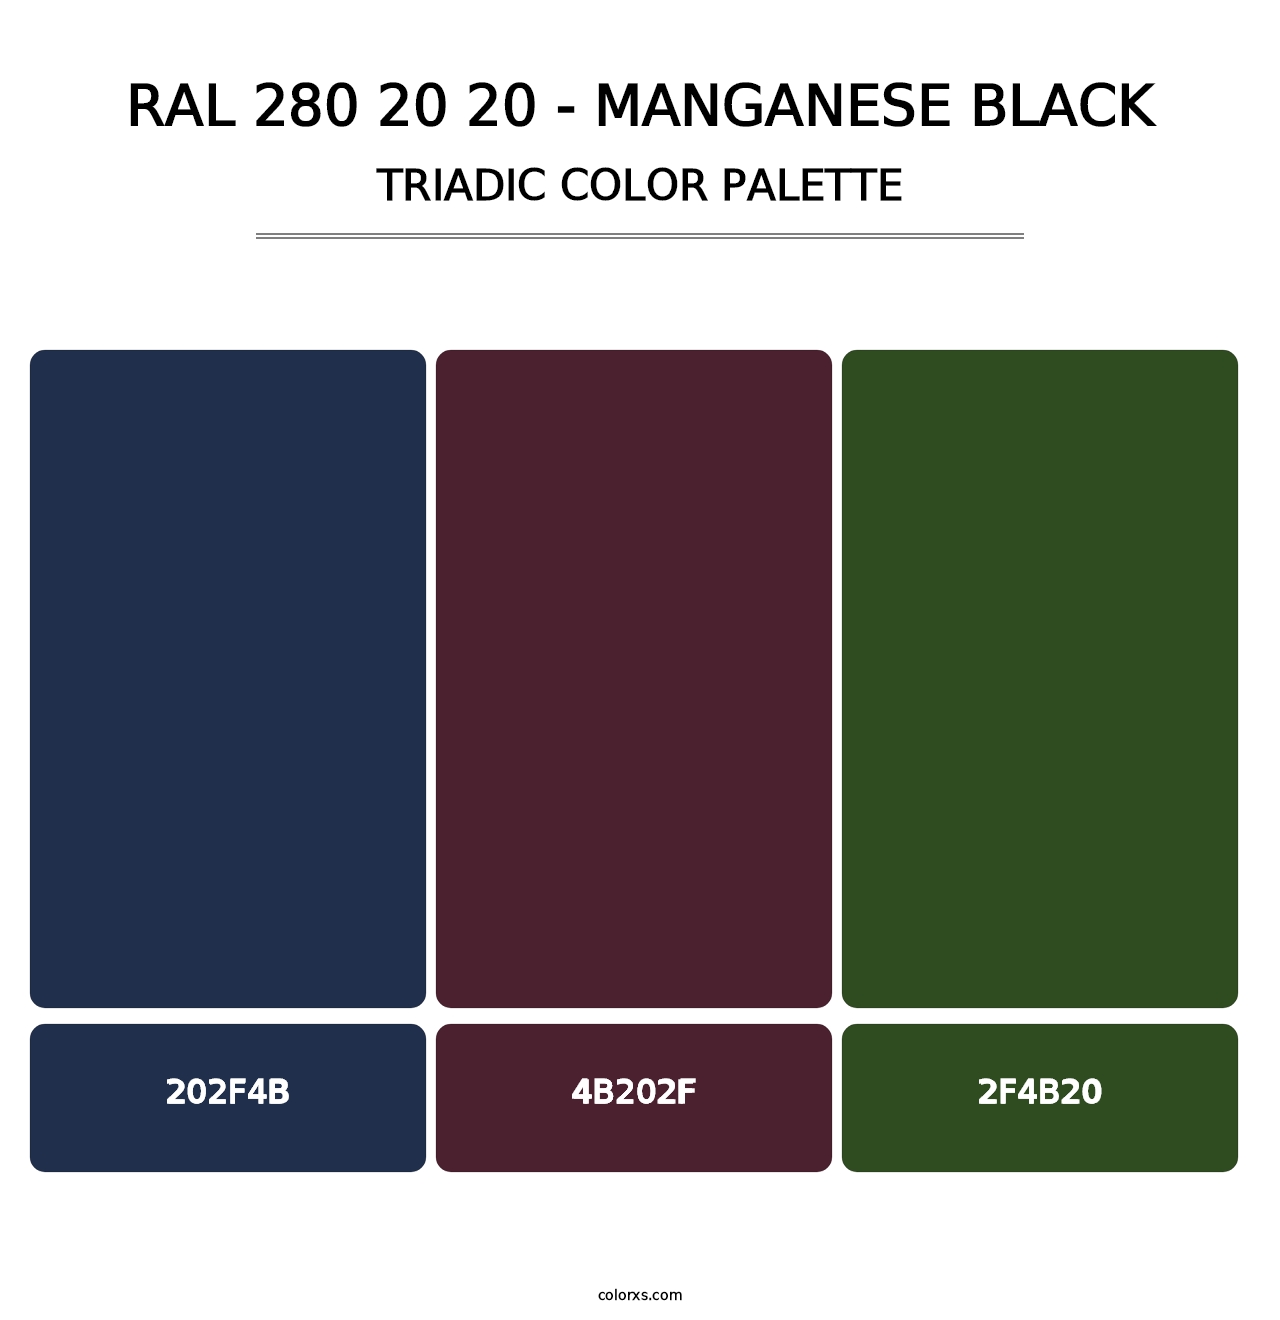 RAL 280 20 20 - Manganese Black - Triadic Color Palette